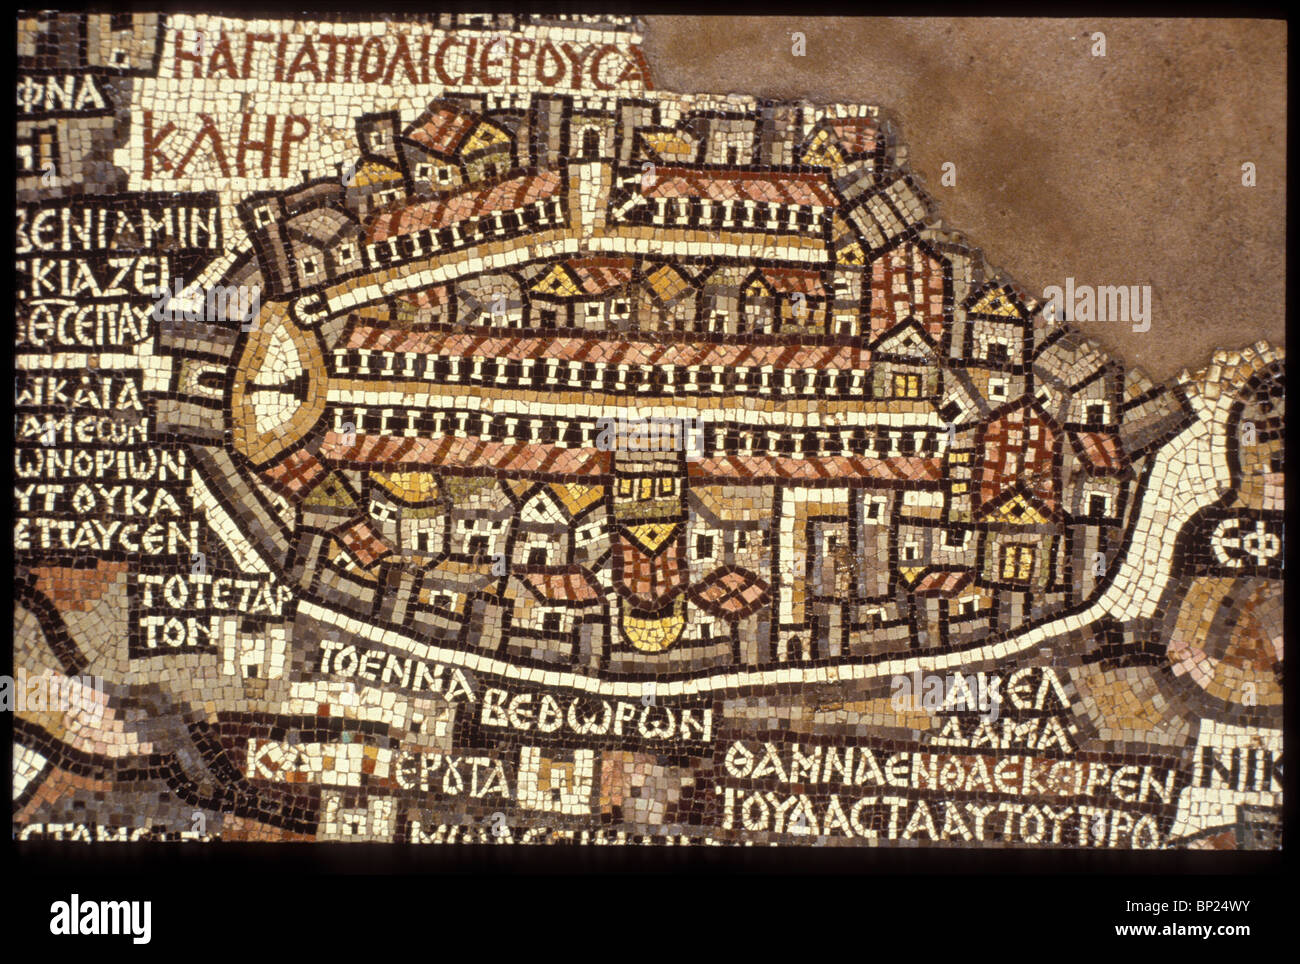 Particolare del pavimento a mosaico del 5TH. C. AD chiesa presso Madaba (TRANS Giordania), che mostra una mappa dettagliata di Gerusalemme in quel momento. Foto Stock